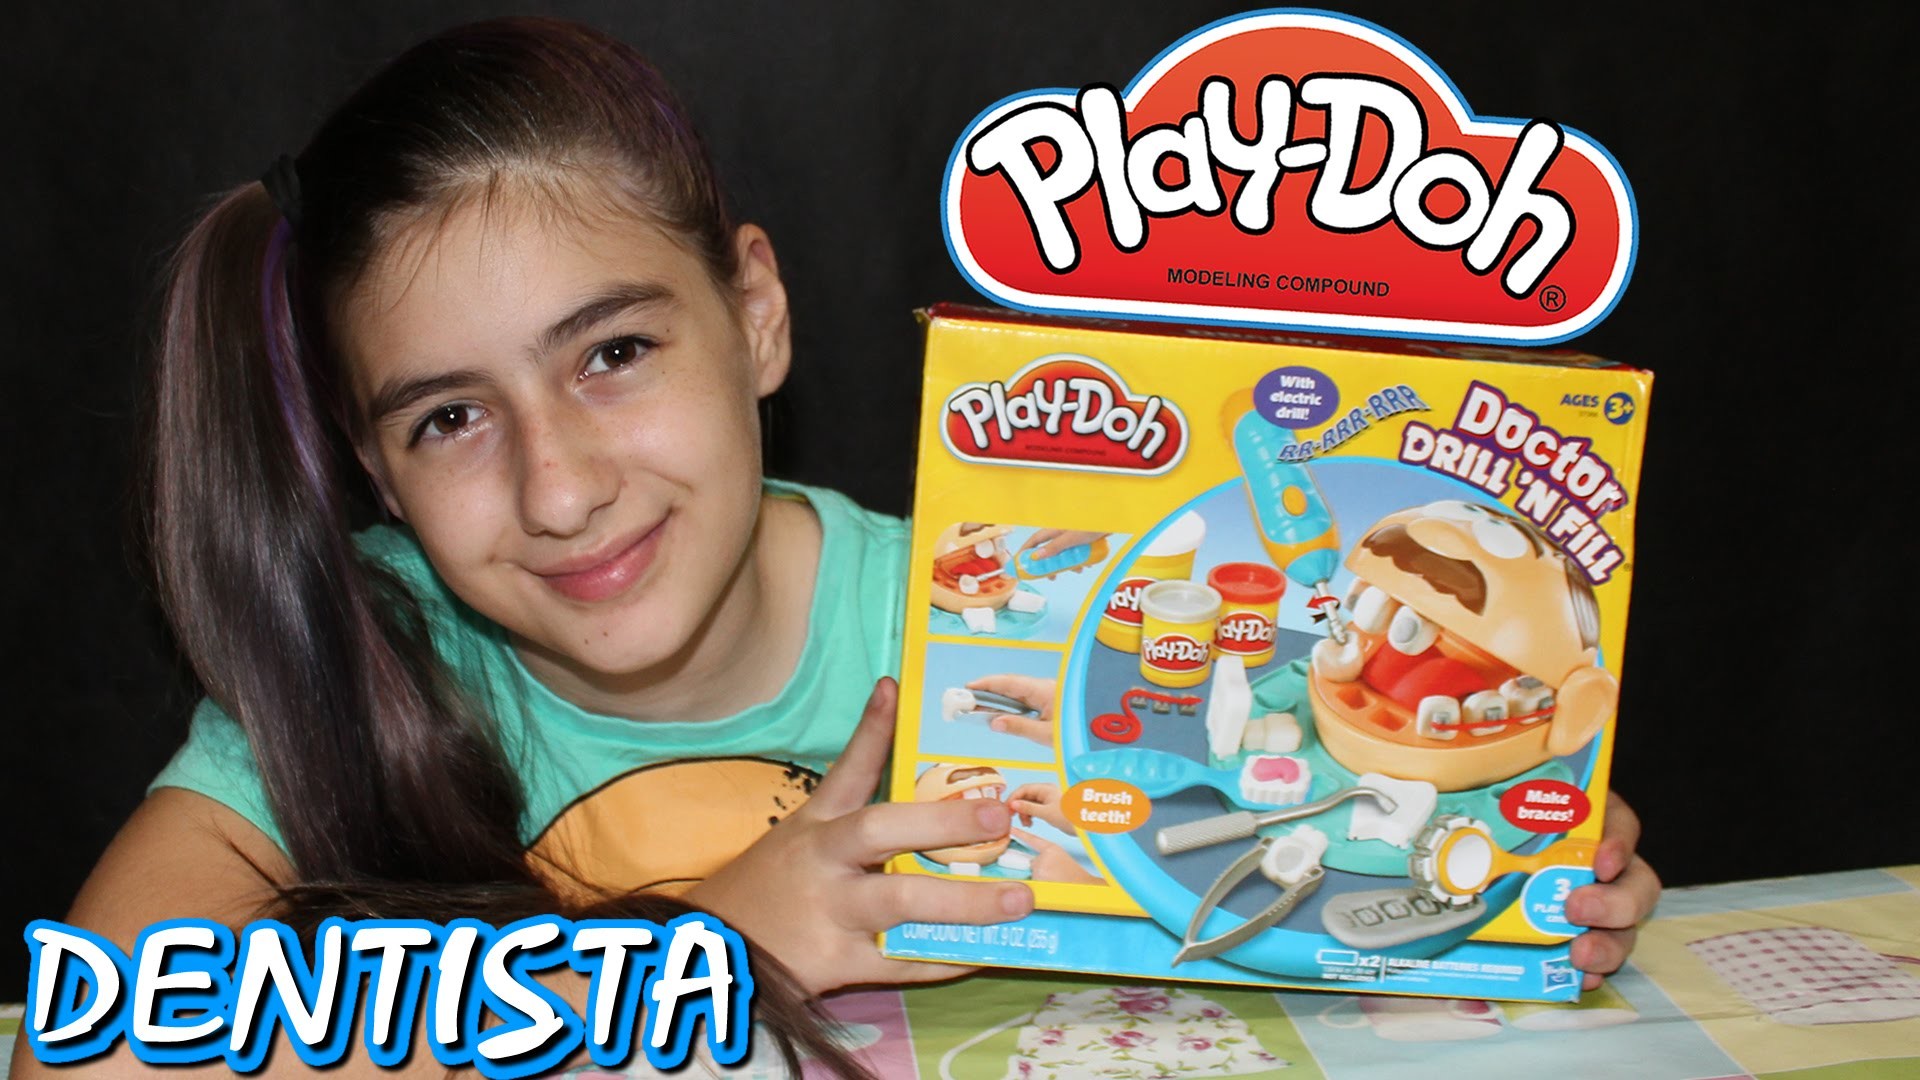 Play Doh Doutor Dentista Massinha de Modelar (Super Massa, Comprinha, DIY) Play Dough